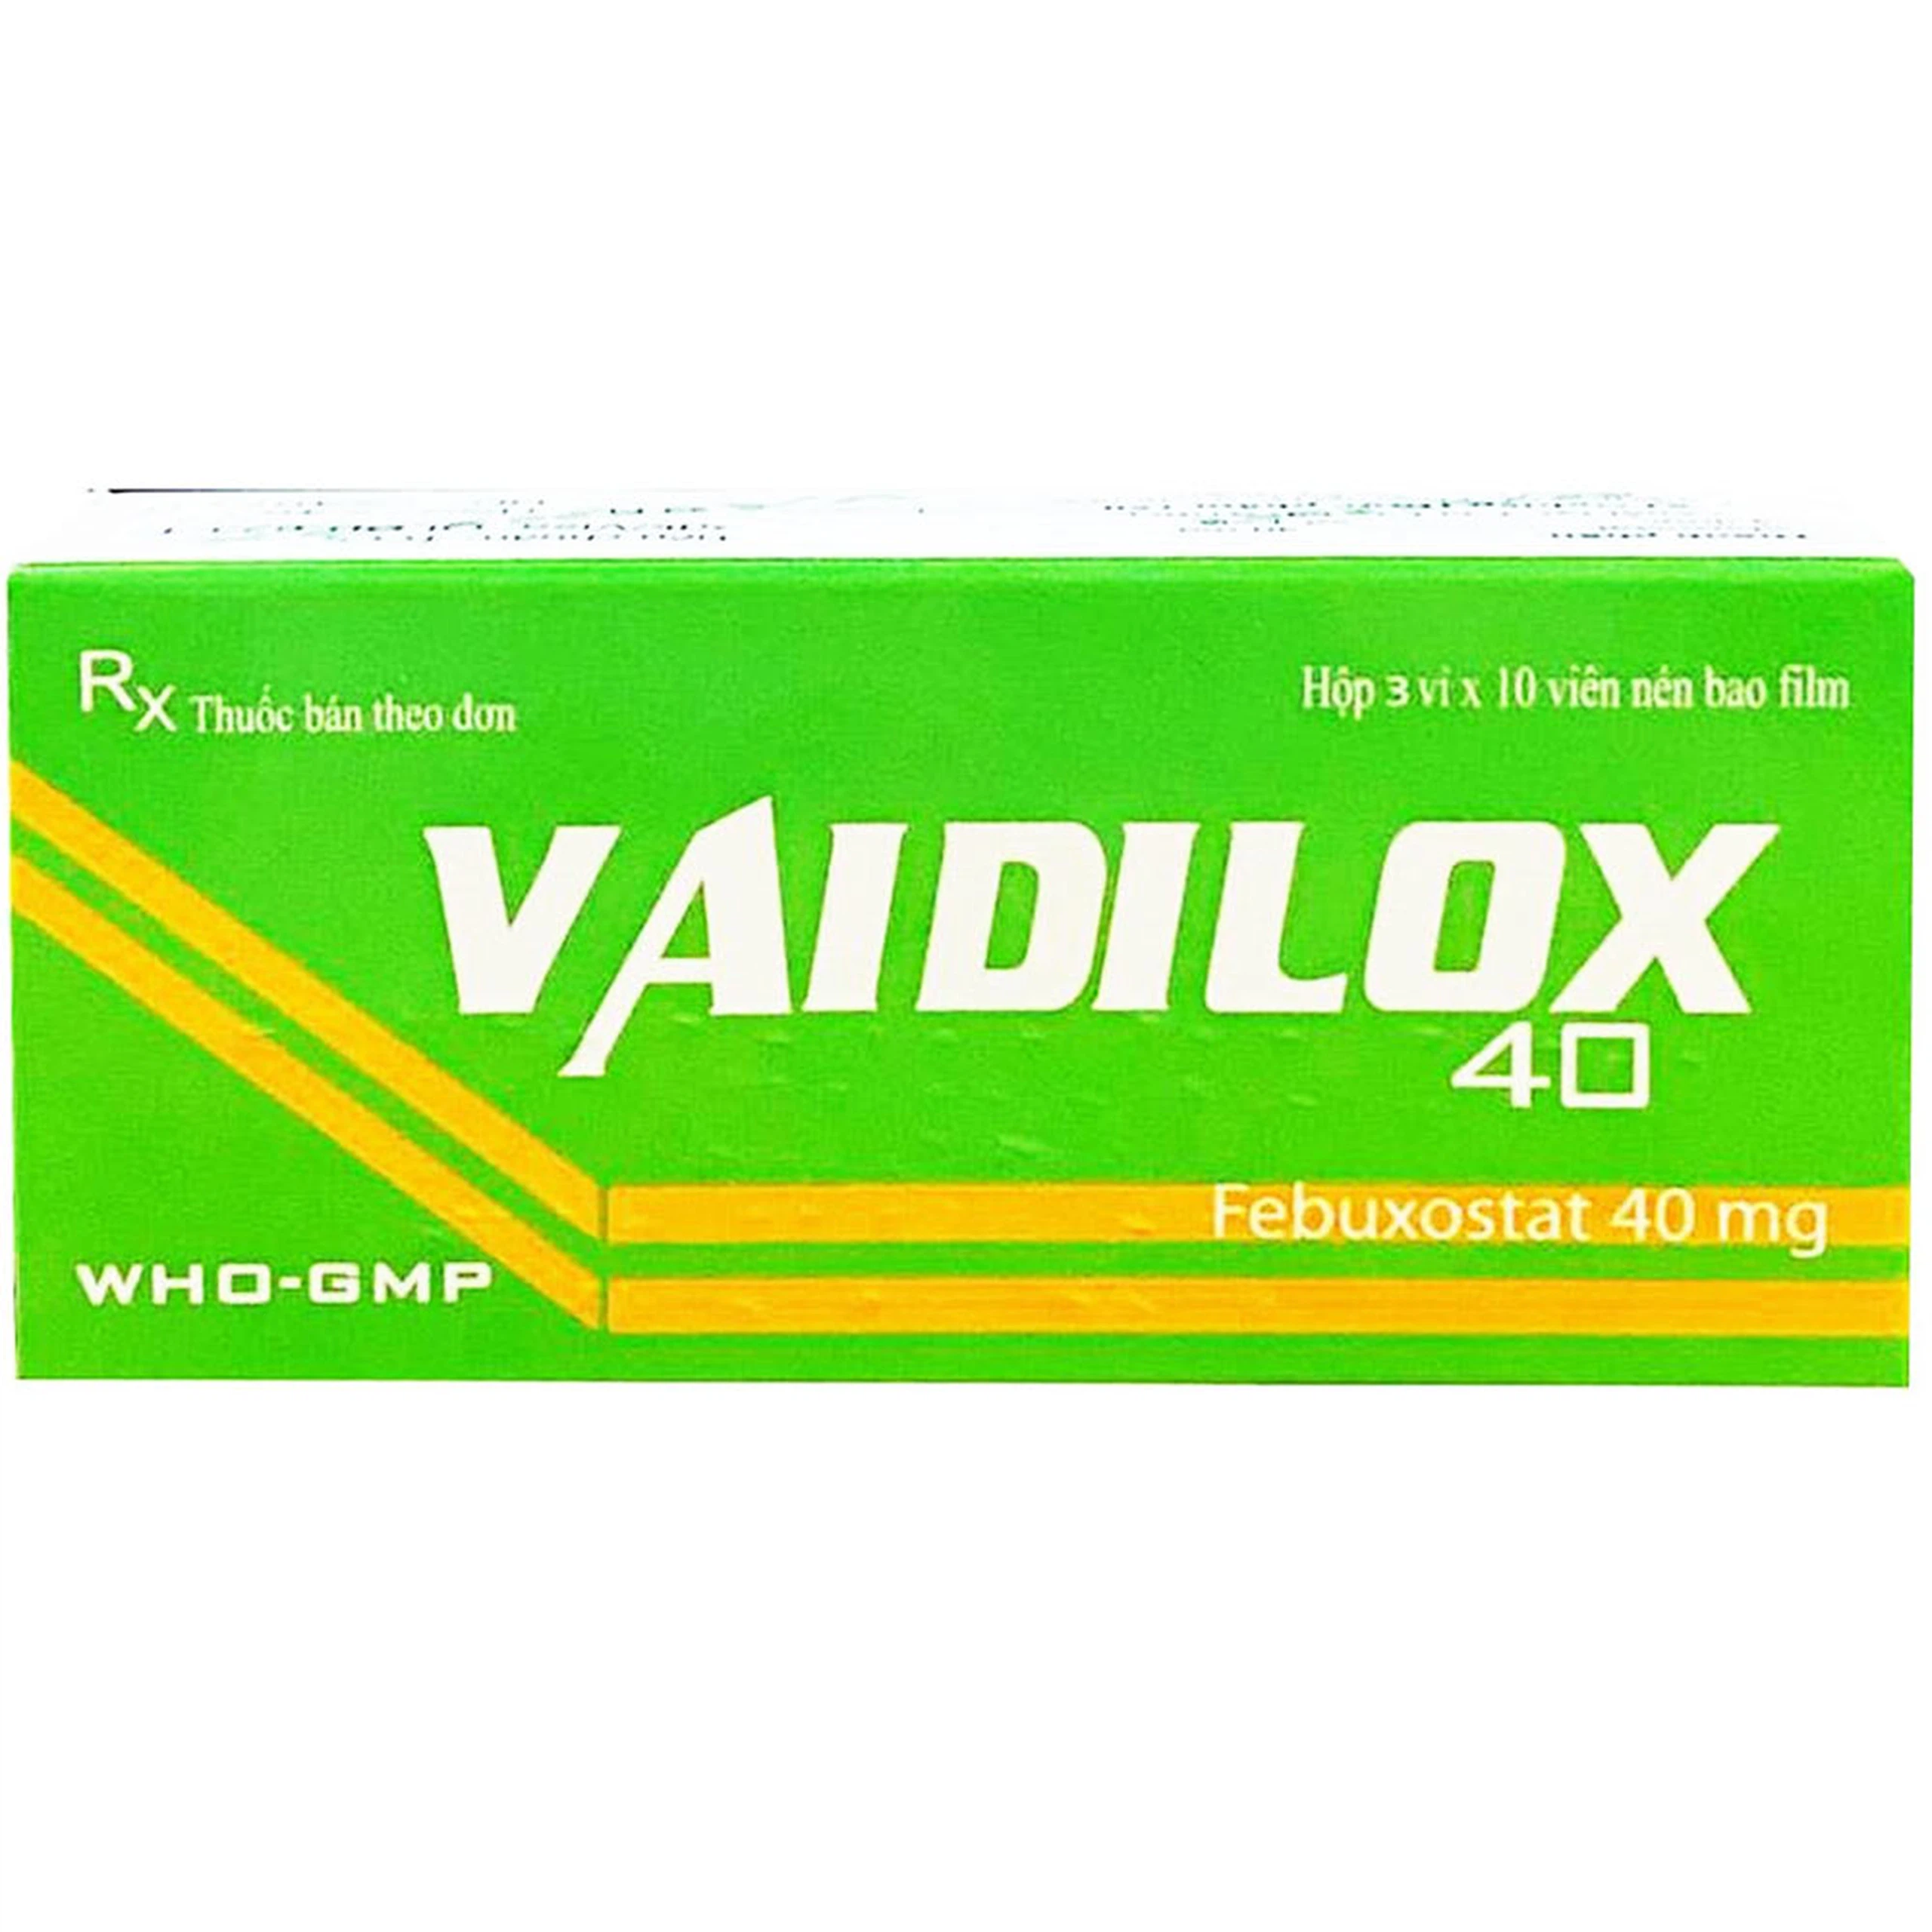 Thuốc Vaidilox 40m Armephaco điều trị tăng acid uric mạn tính (3 vỉ x 10 viên)